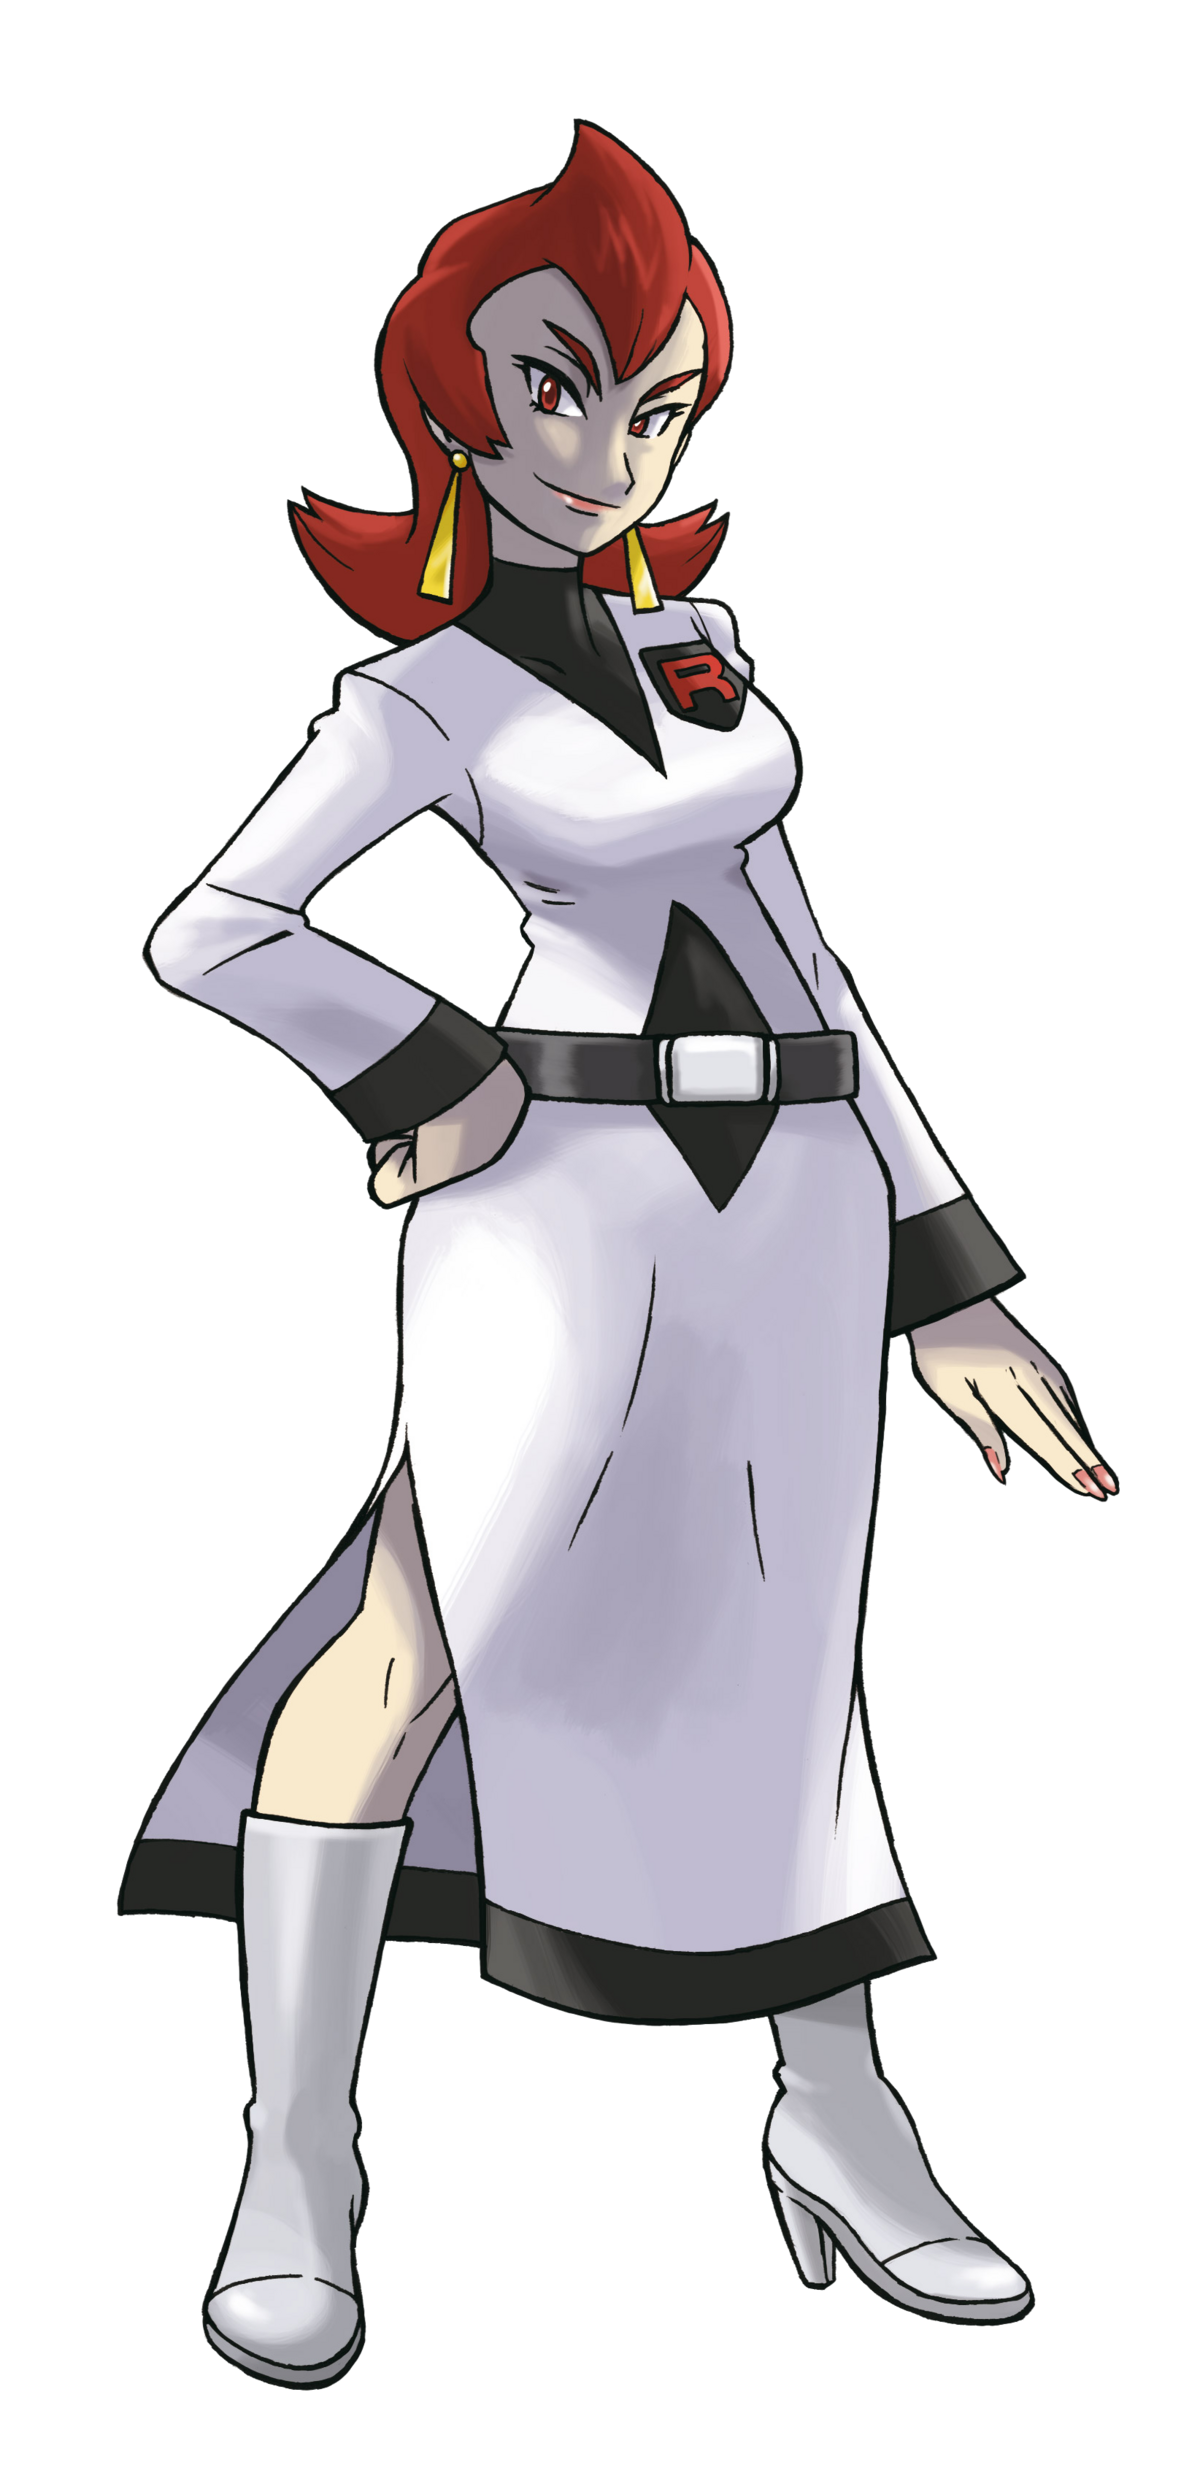 Giovanni (Adventures), Pokémon Wiki